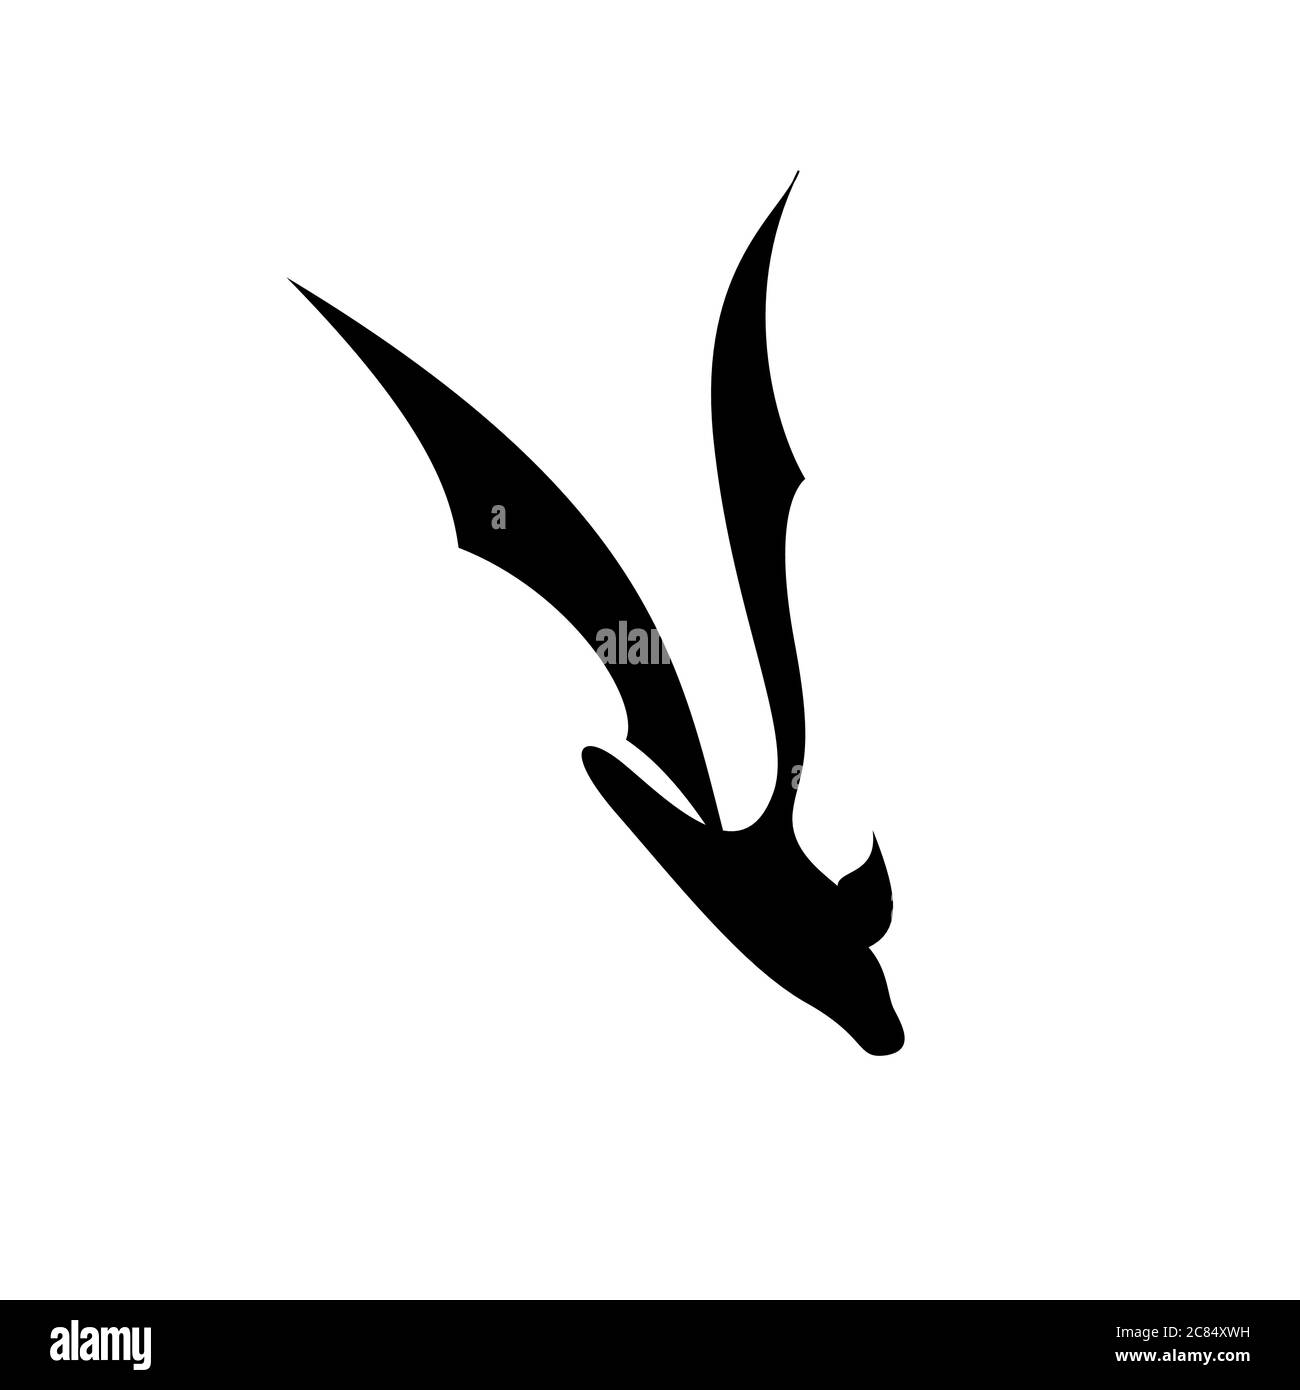 immagine vettoriale di una sagoma nera di una pipistrello in volo Illustrazione Vettoriale